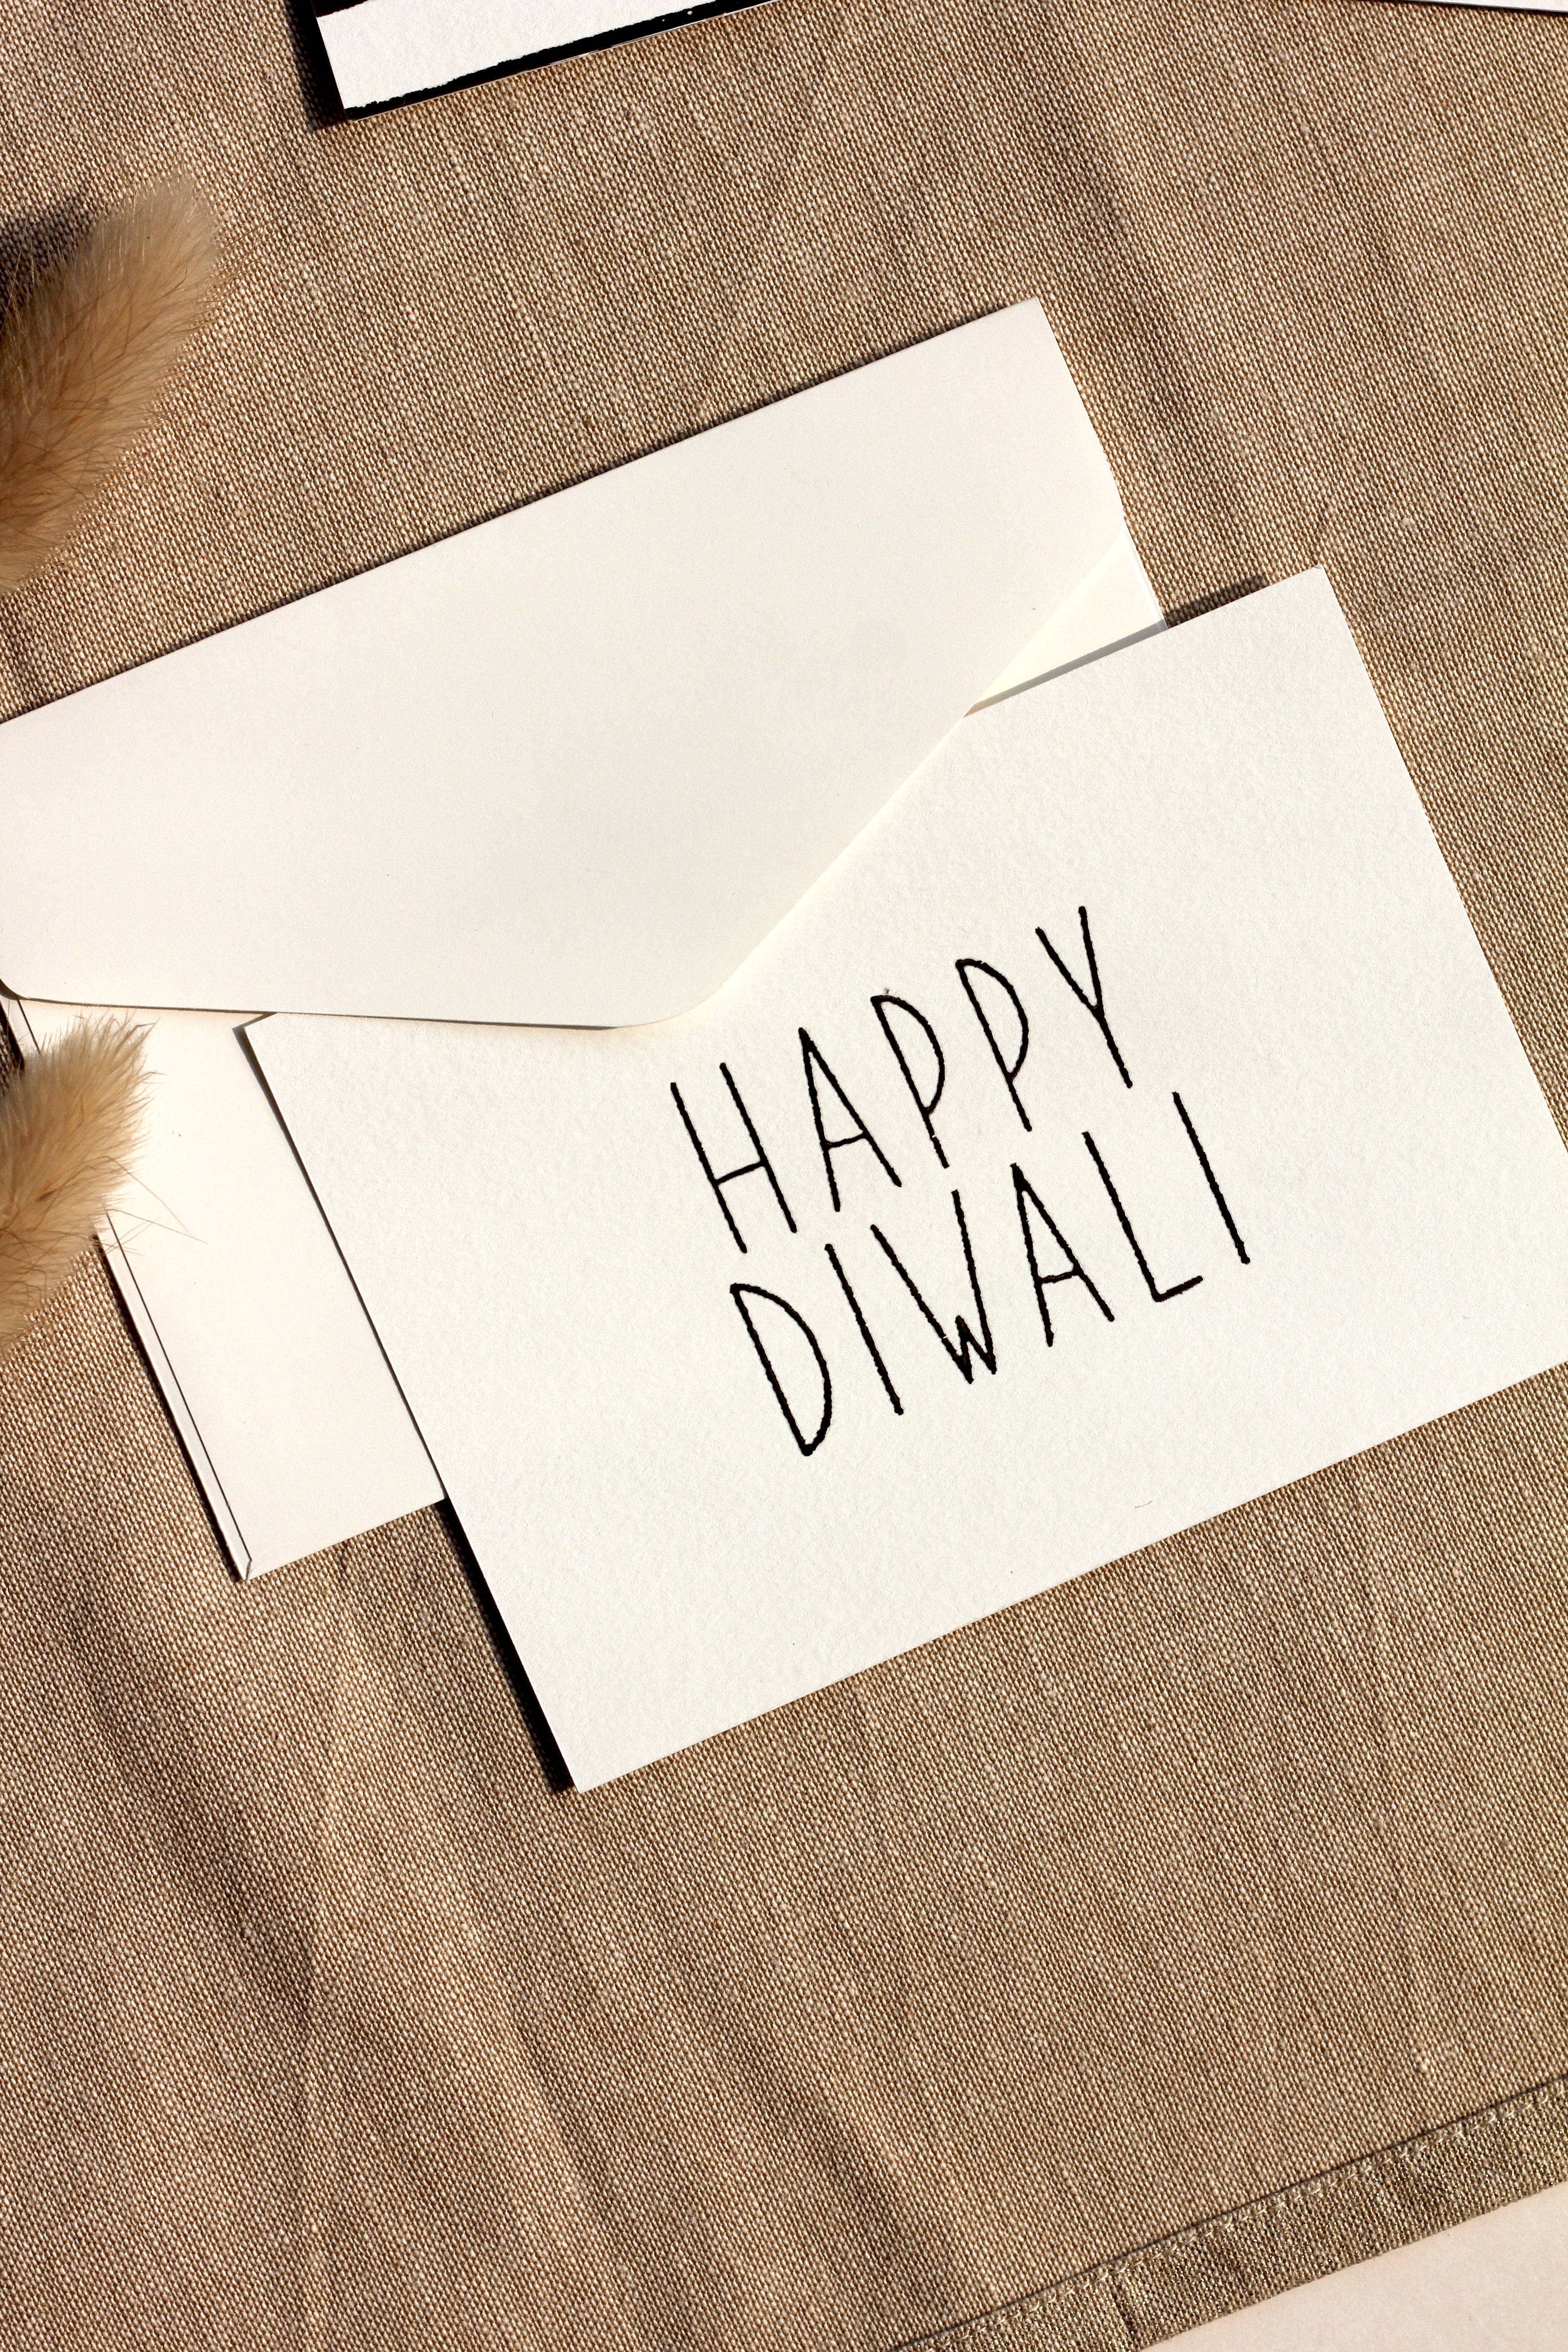 Diwali festive cards (foiled) set of 6